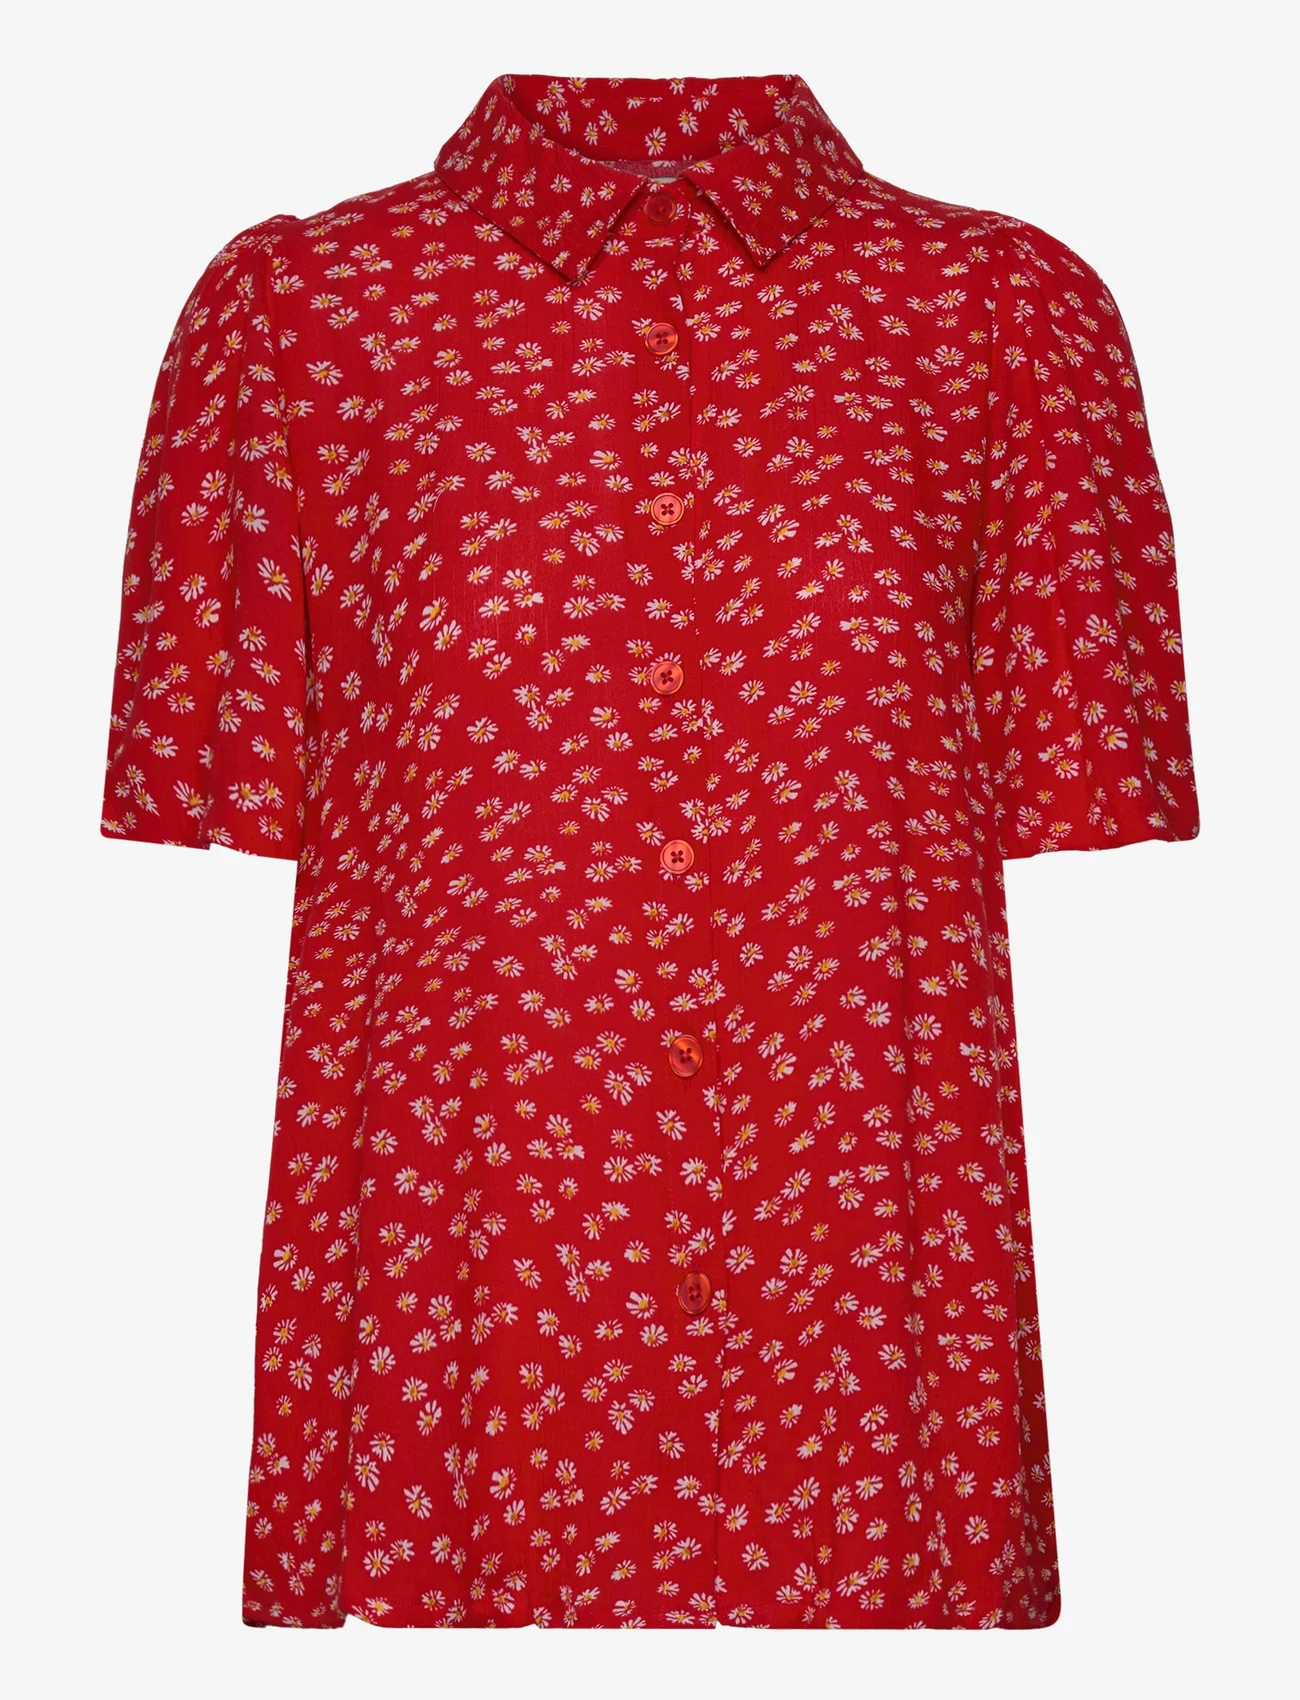 Lollys Laundry - Aby Shirt - blouses korte mouwen - 74 flower print - 0